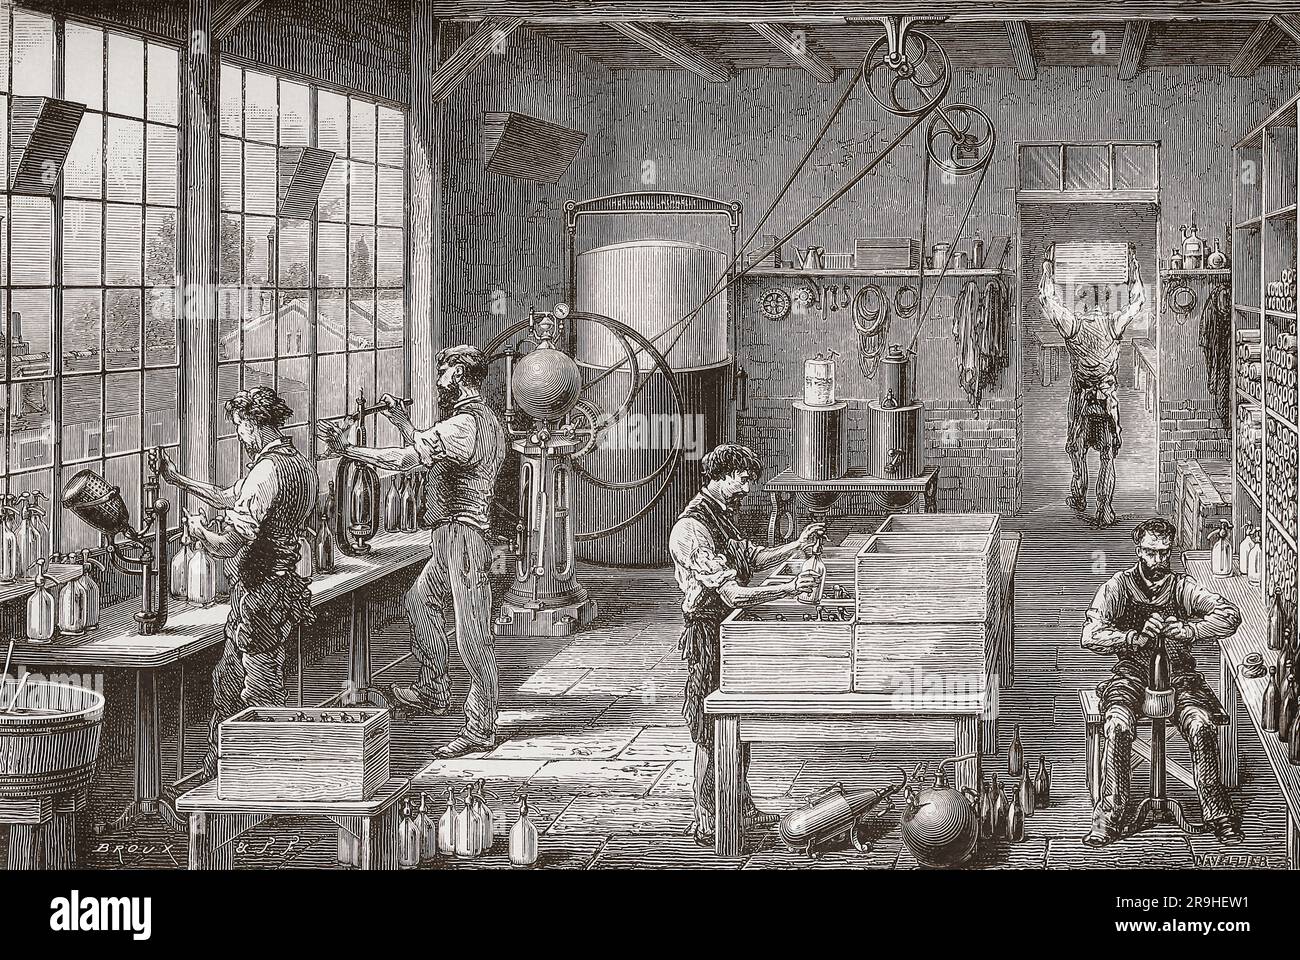 Intérieur d'une usine d'eau de soude de 19th siècle montrant les travailleurs préparant des bouteilles du produit. Après une illustration dans les merveilles de l'industrie, par Louis Figuier, publié en 1877. Banque D'Images